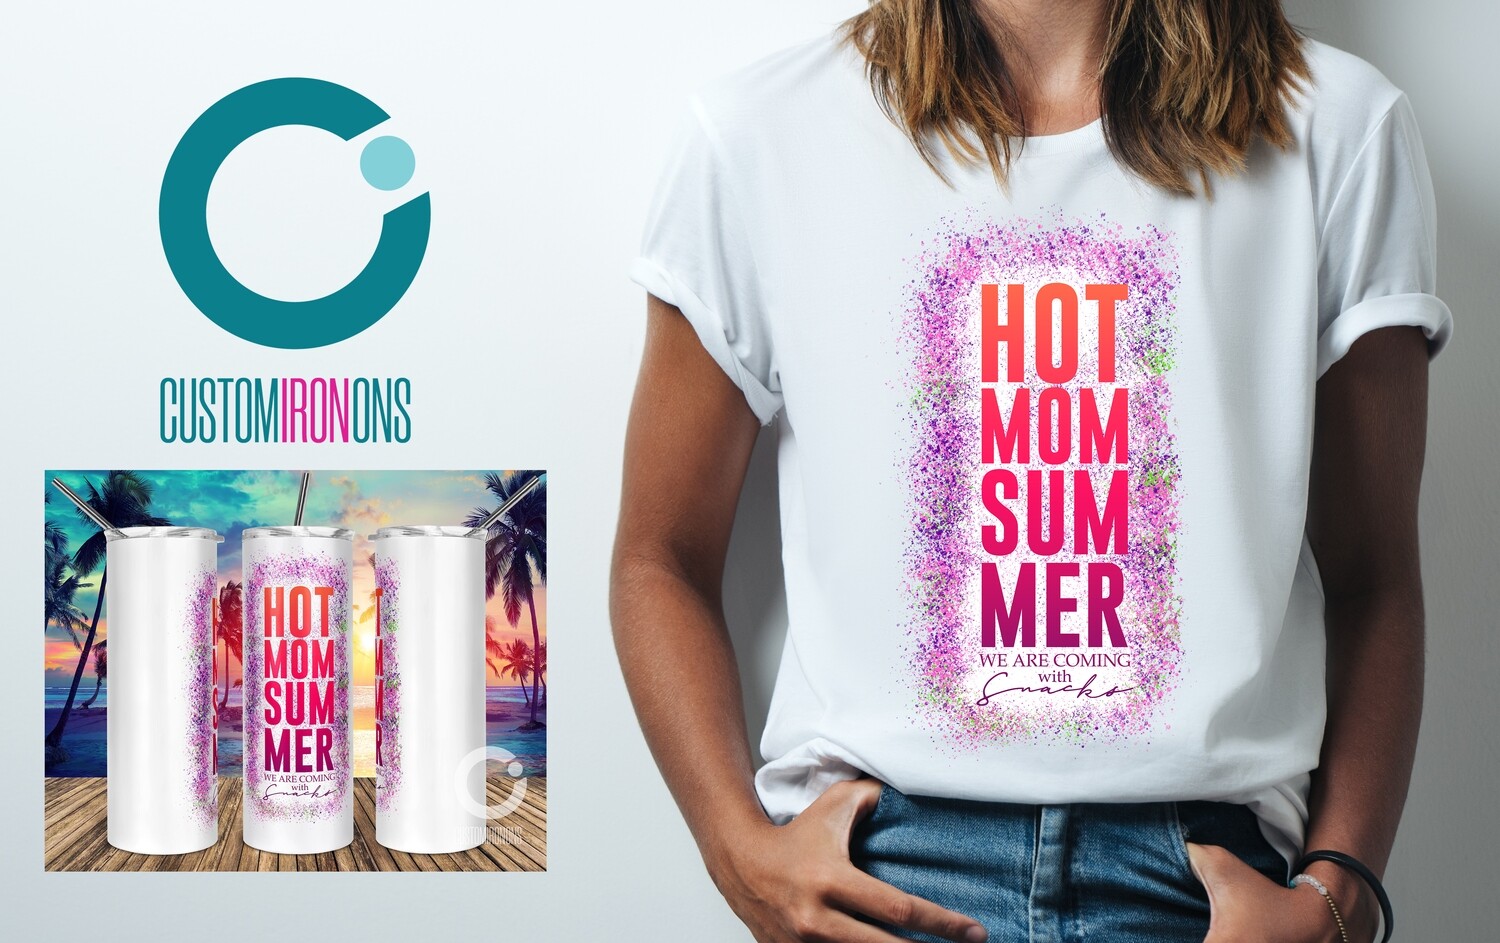 Hot Mom Summer sublimation design - Sublimation design - Sublimation - DTG printing - Sublimation design download - Summer sublimation design